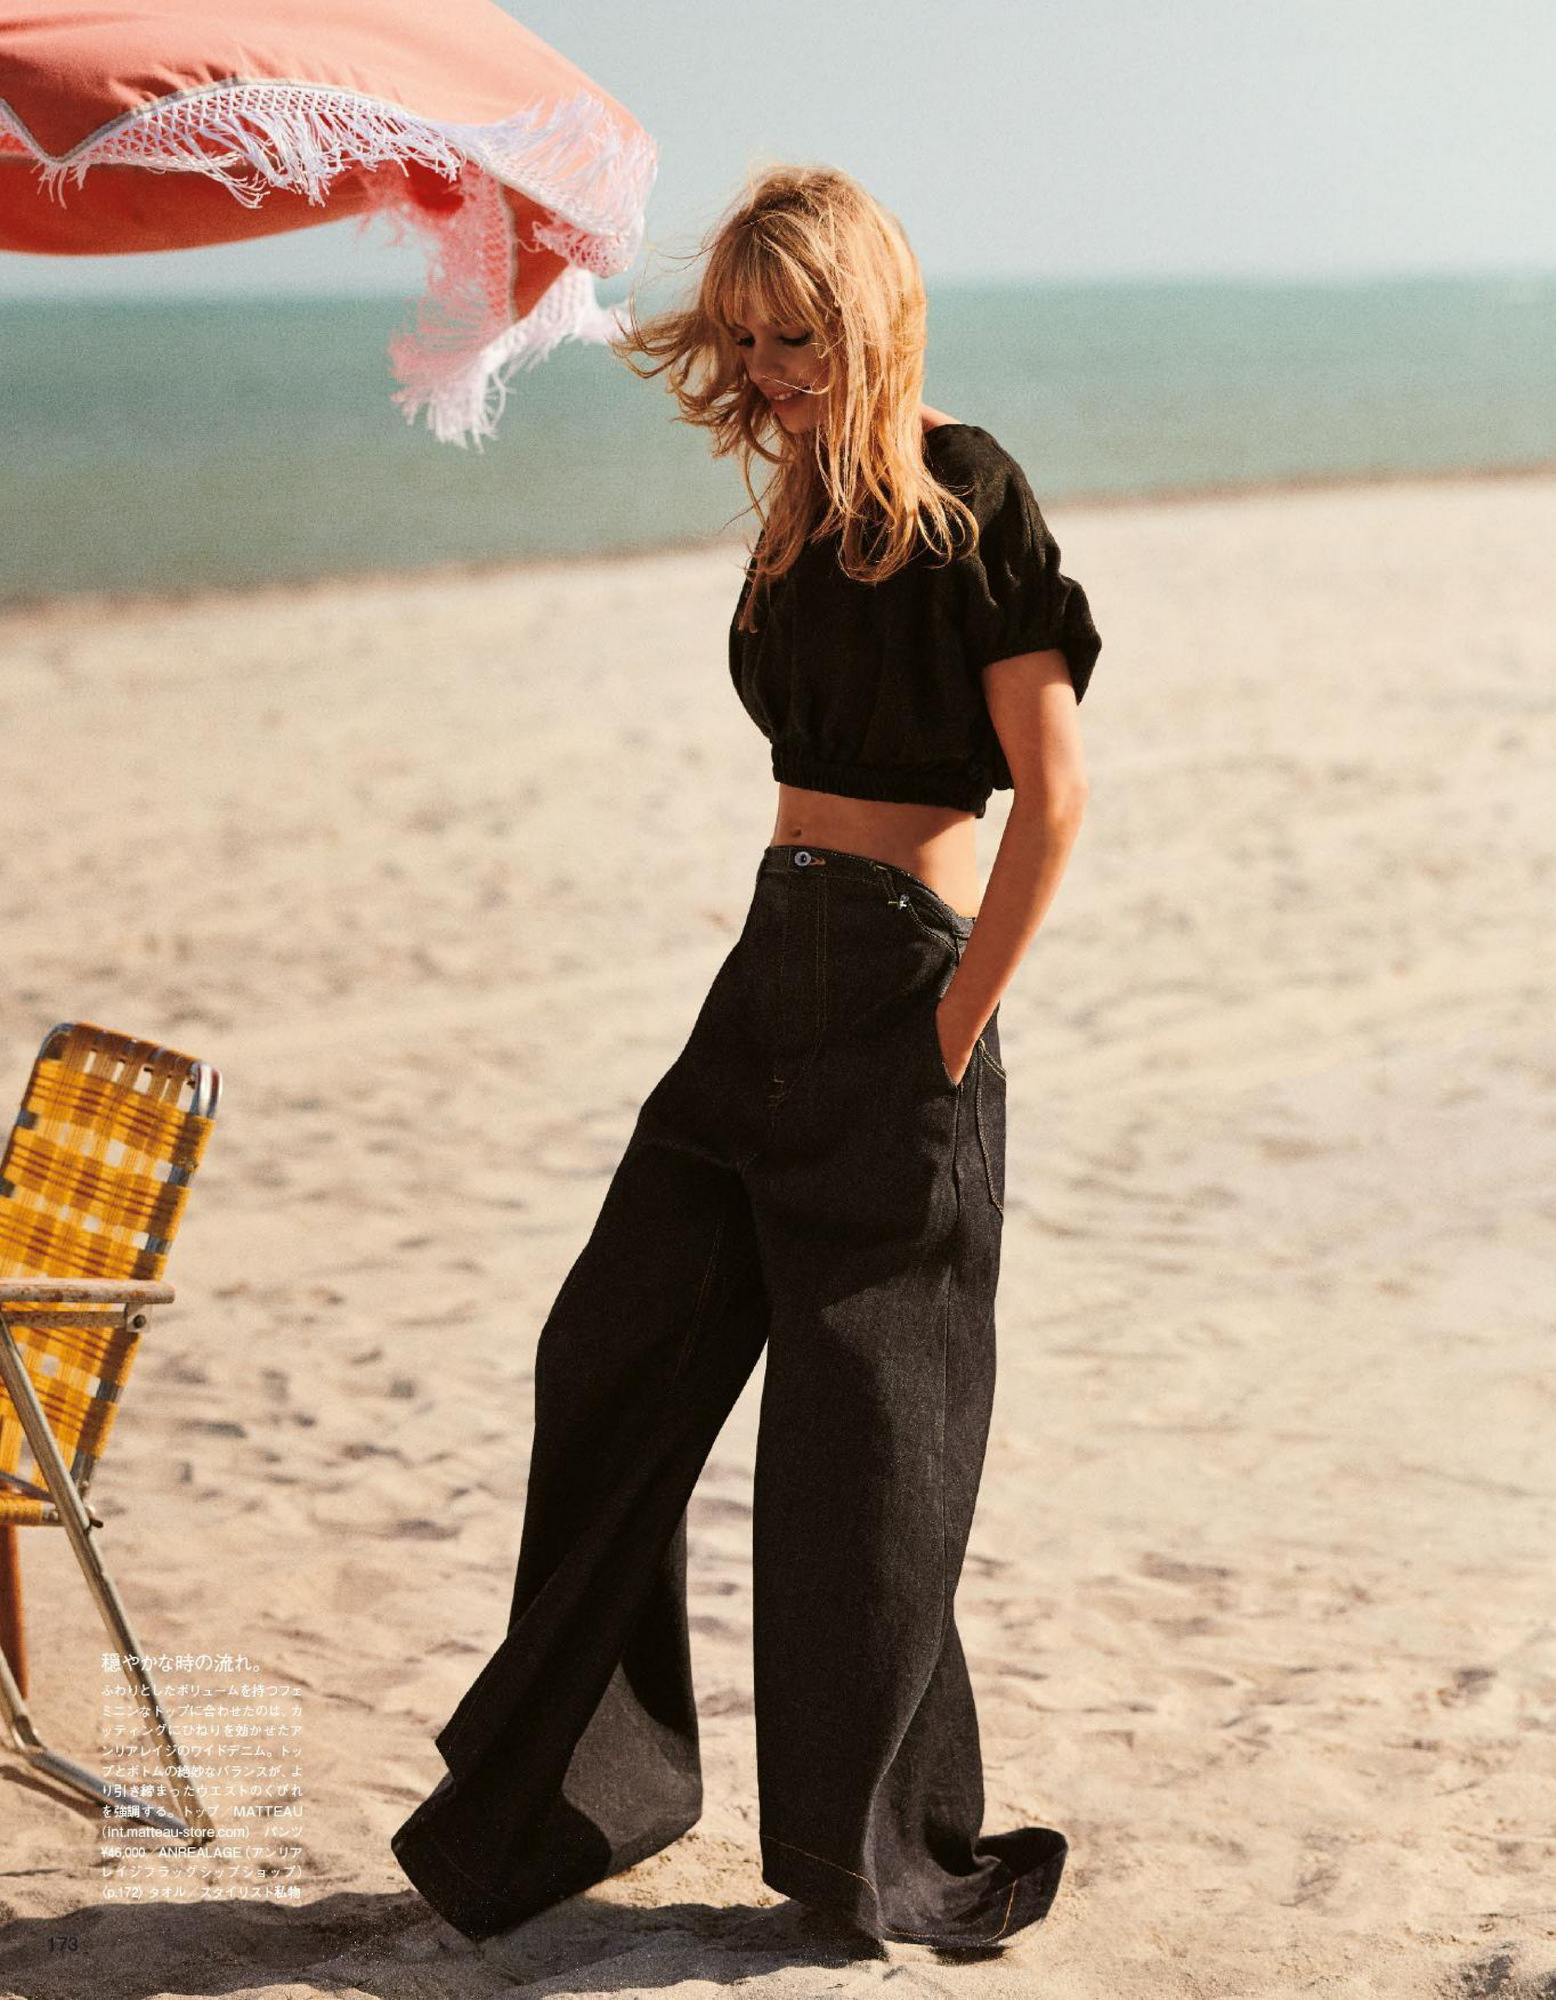 Fotos n°3 : Stella Maxwell Beachin' it For Vogue!